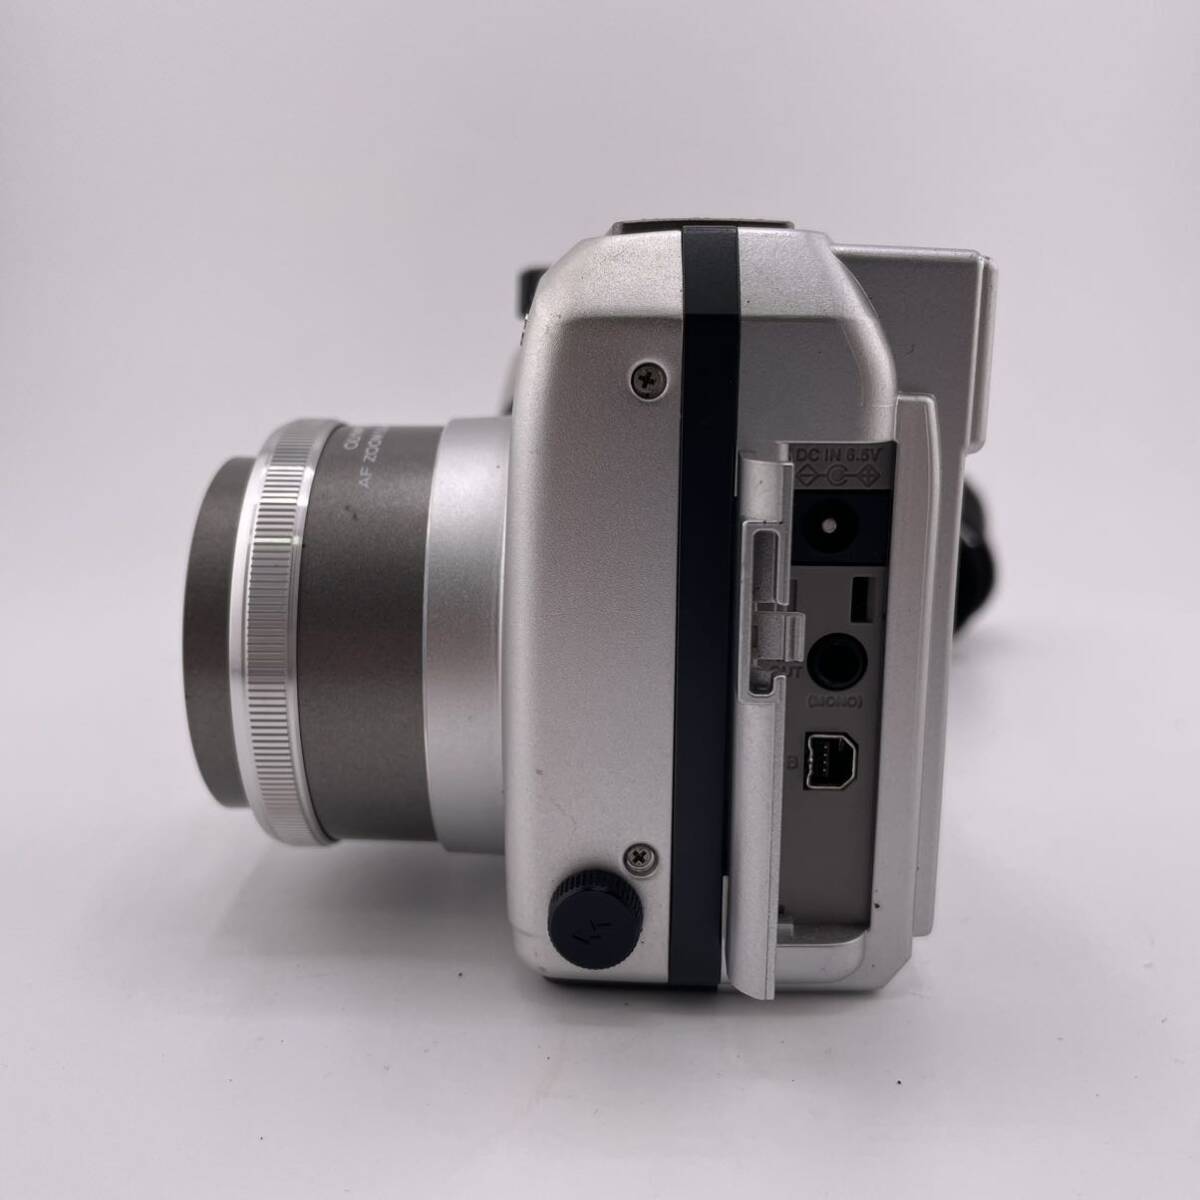 ★訳あり★OLYMPUS CAMEDIA C-700 Ultra Zoom カメラ デジカメ デジタルカメラ OLYMPUS LENS AF ZOOM 5.9-59mm 1:2.8-3.5【S30383-673】_画像3